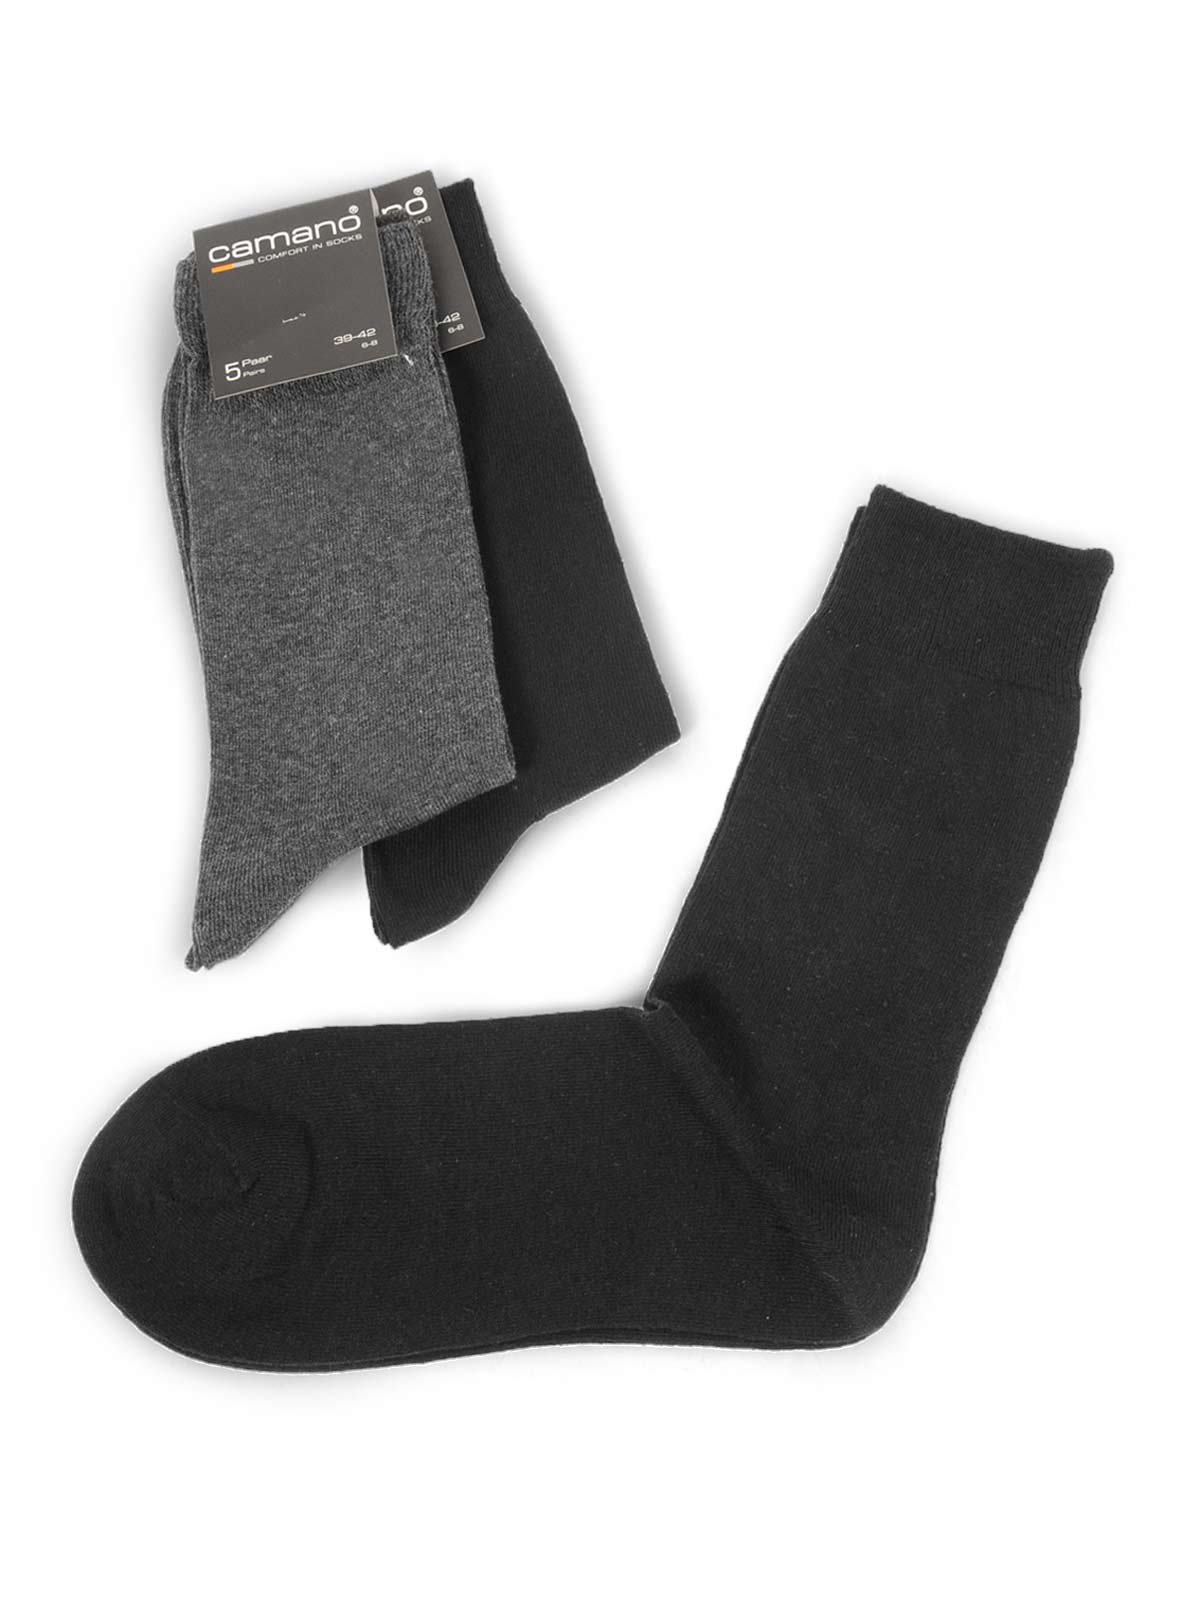 Foto Camano Lote de 5 pares de calcetines negro/antracita EU: 43-46